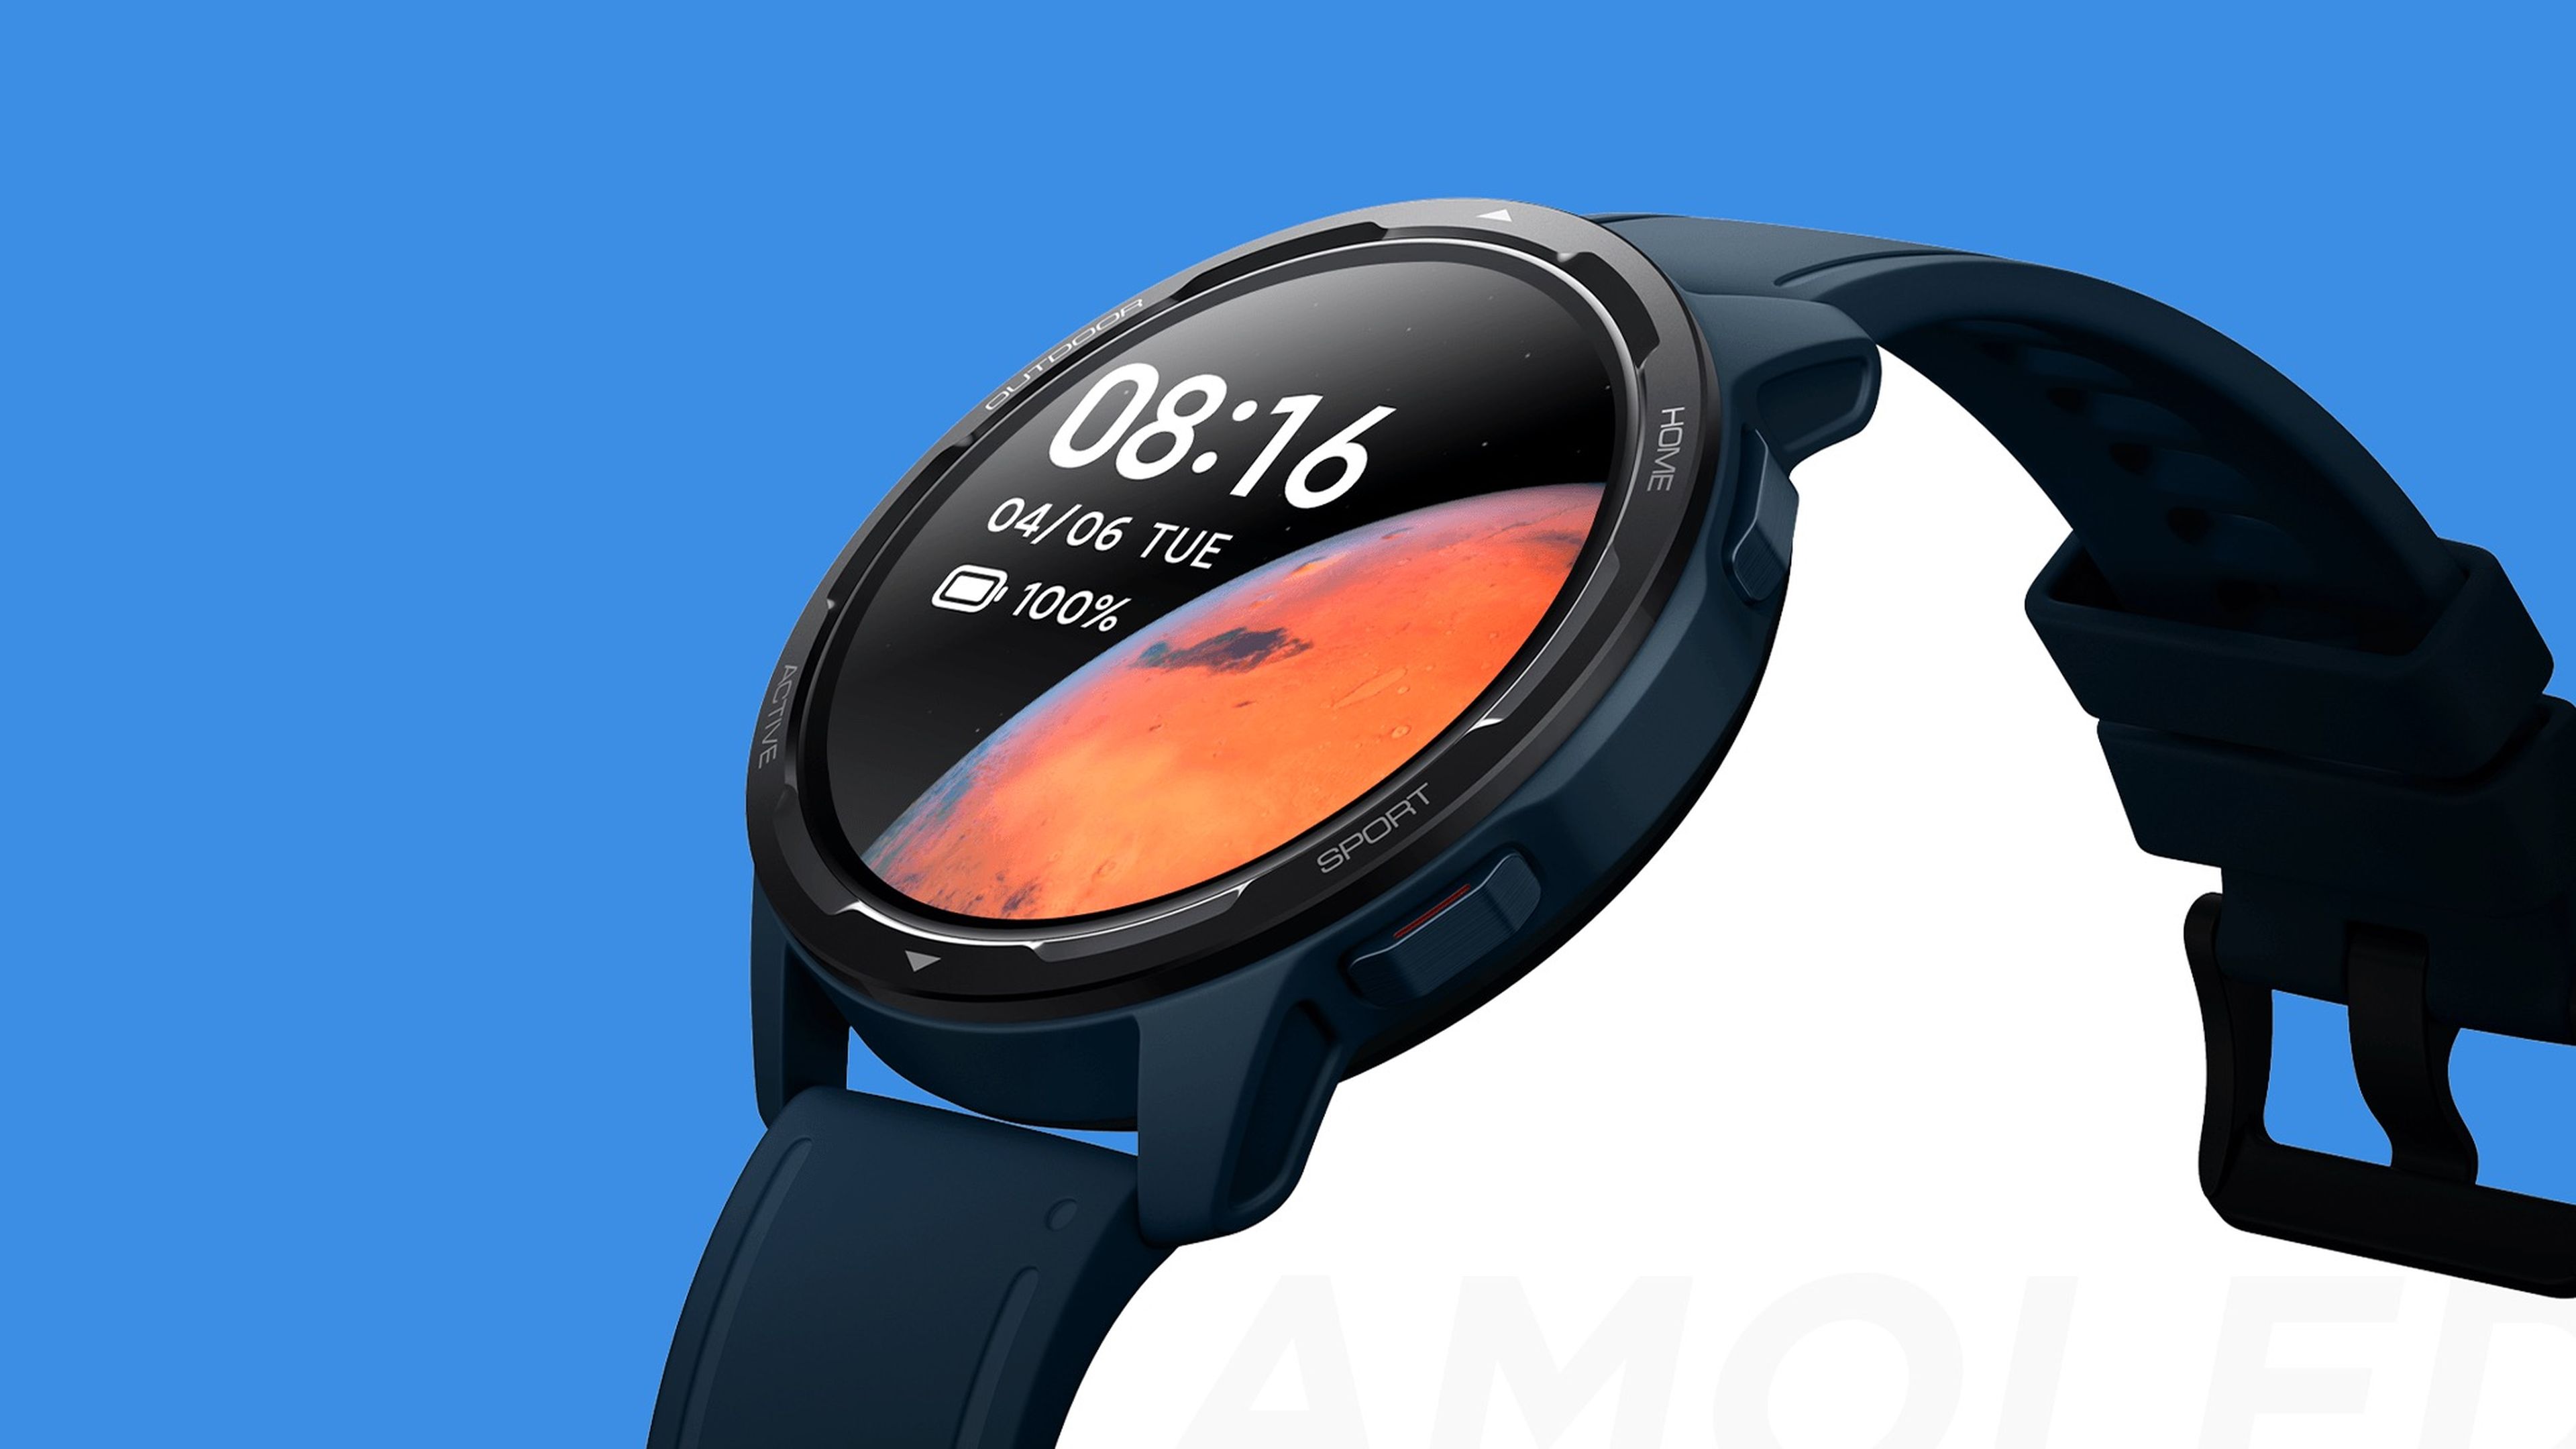 El nuevo reloj inteligente de Xiaomi se ha filtrado: Xiaomi Watch Active S1